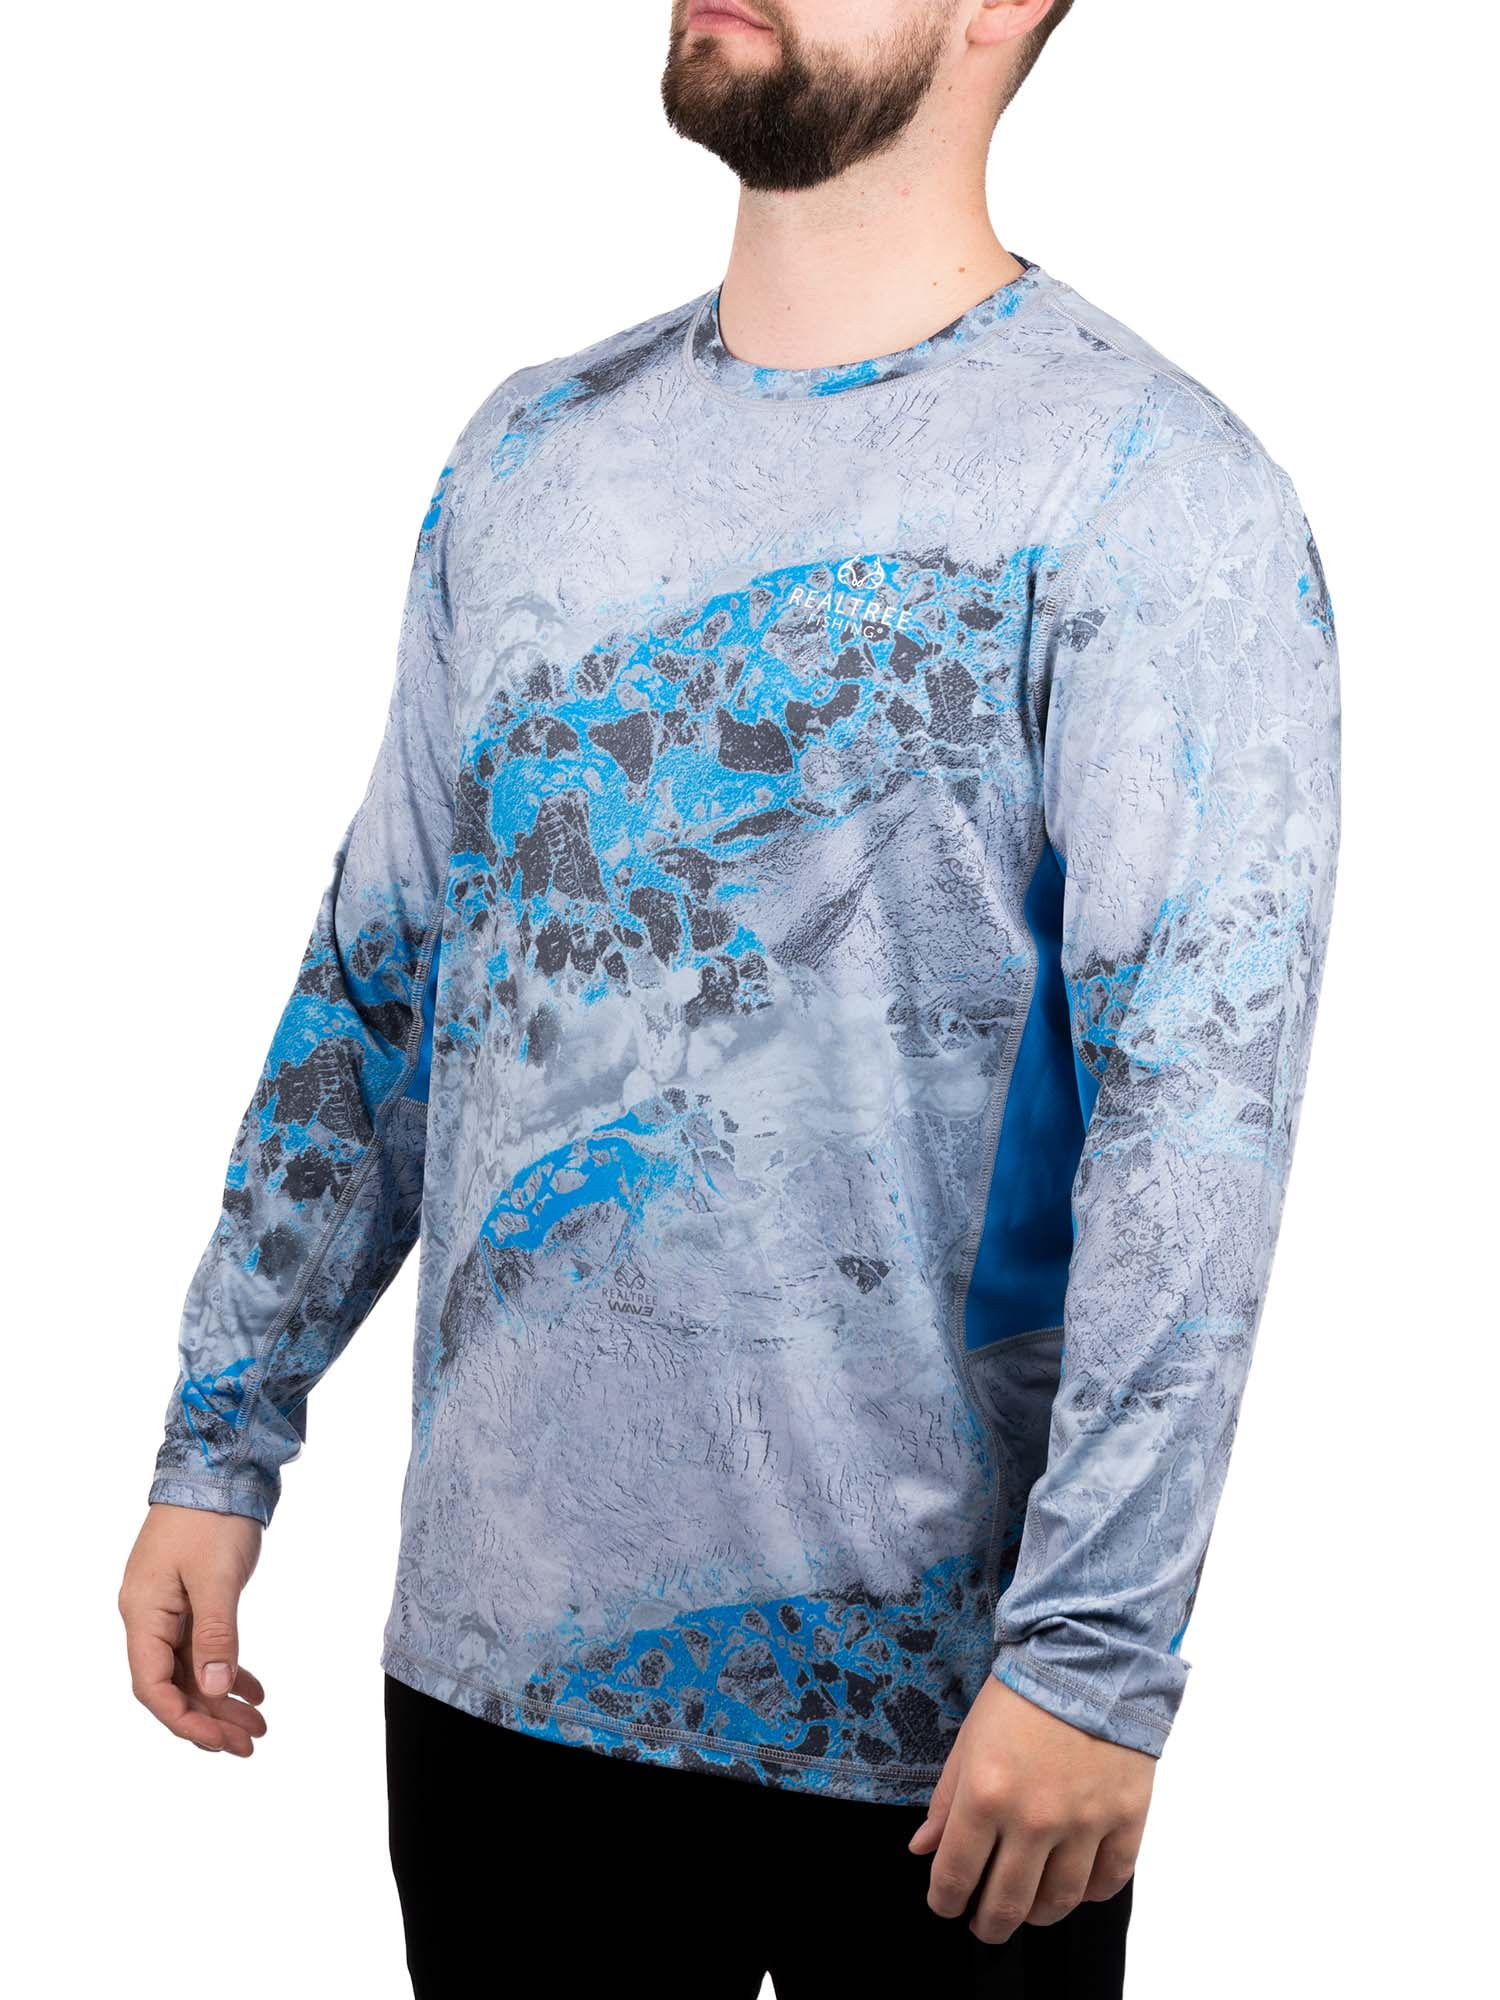 Realtree Fishing Shirt Mens S Blue Wave Print Logo Hunting Outdoor